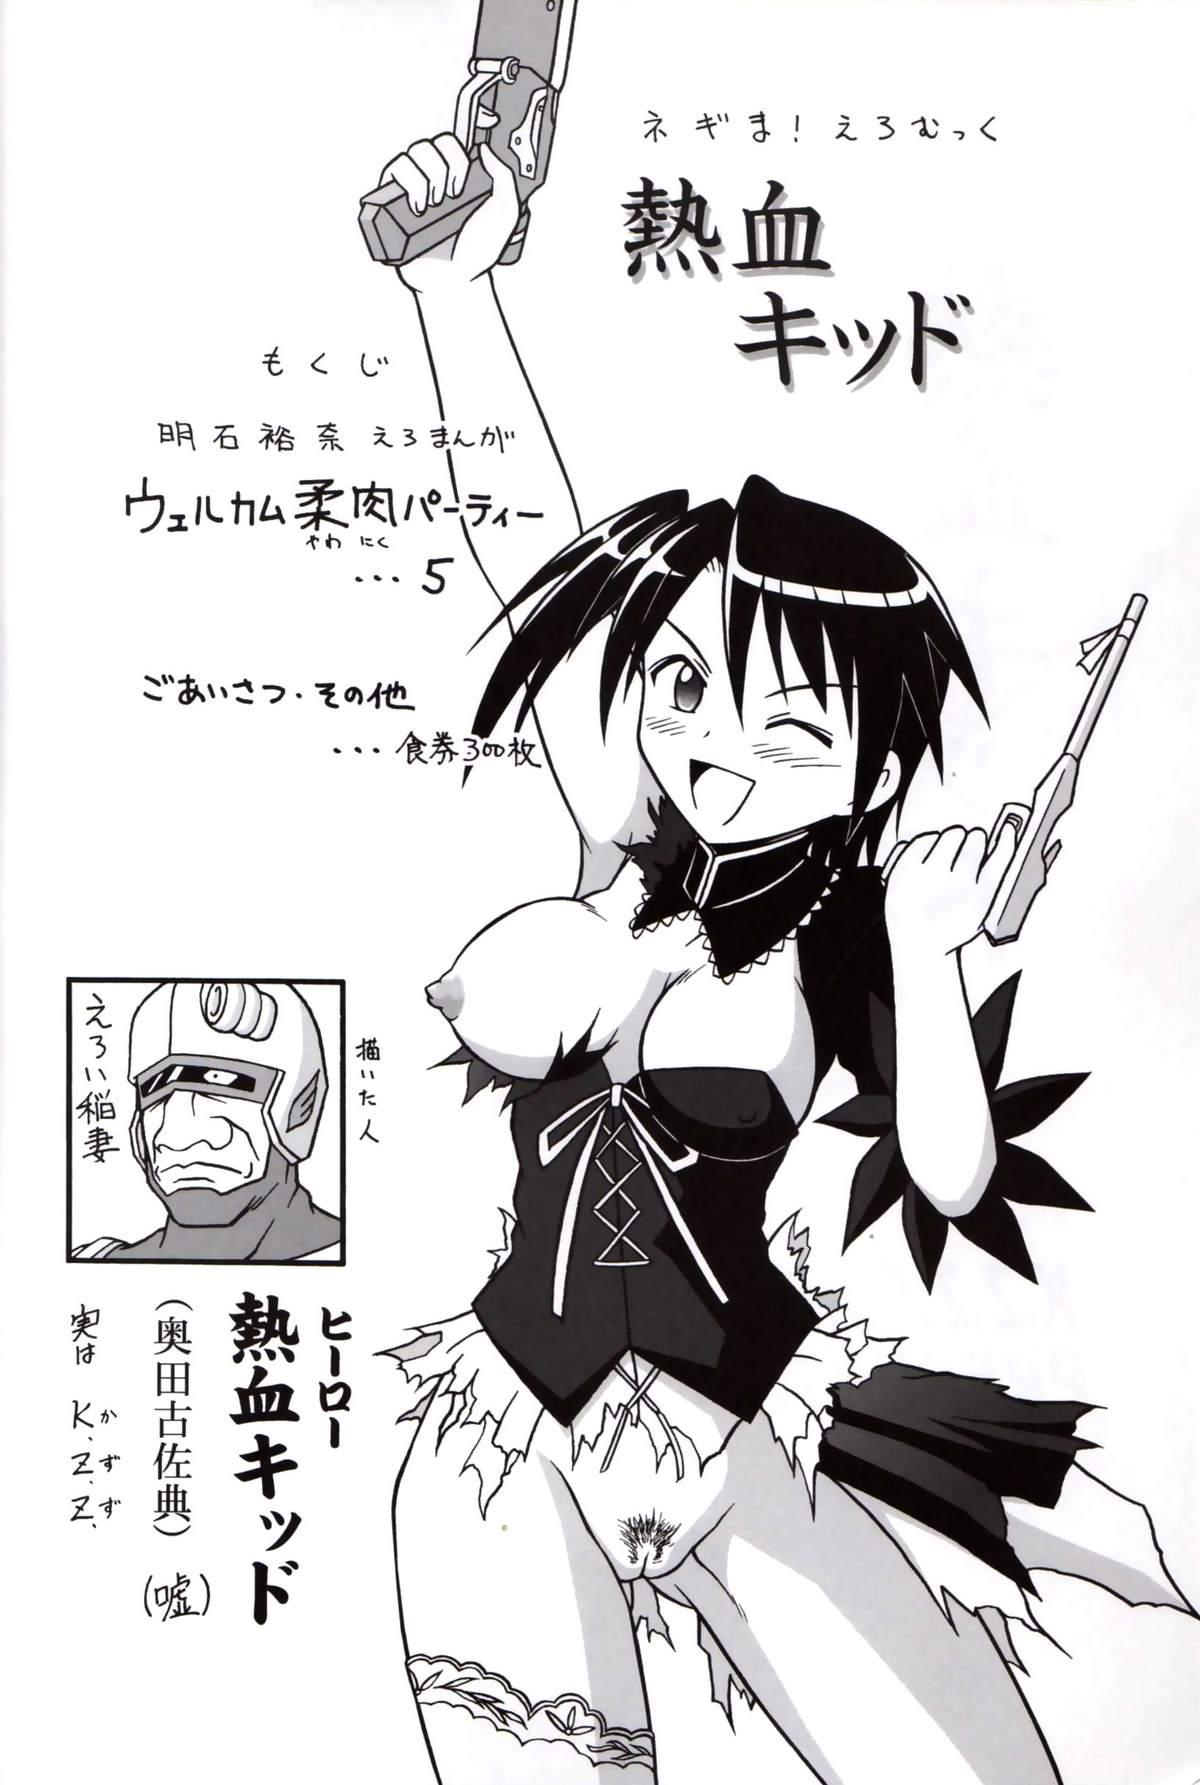 Clip Nekketsu Kid - Mahou sensei negima Sexcam - Page 3